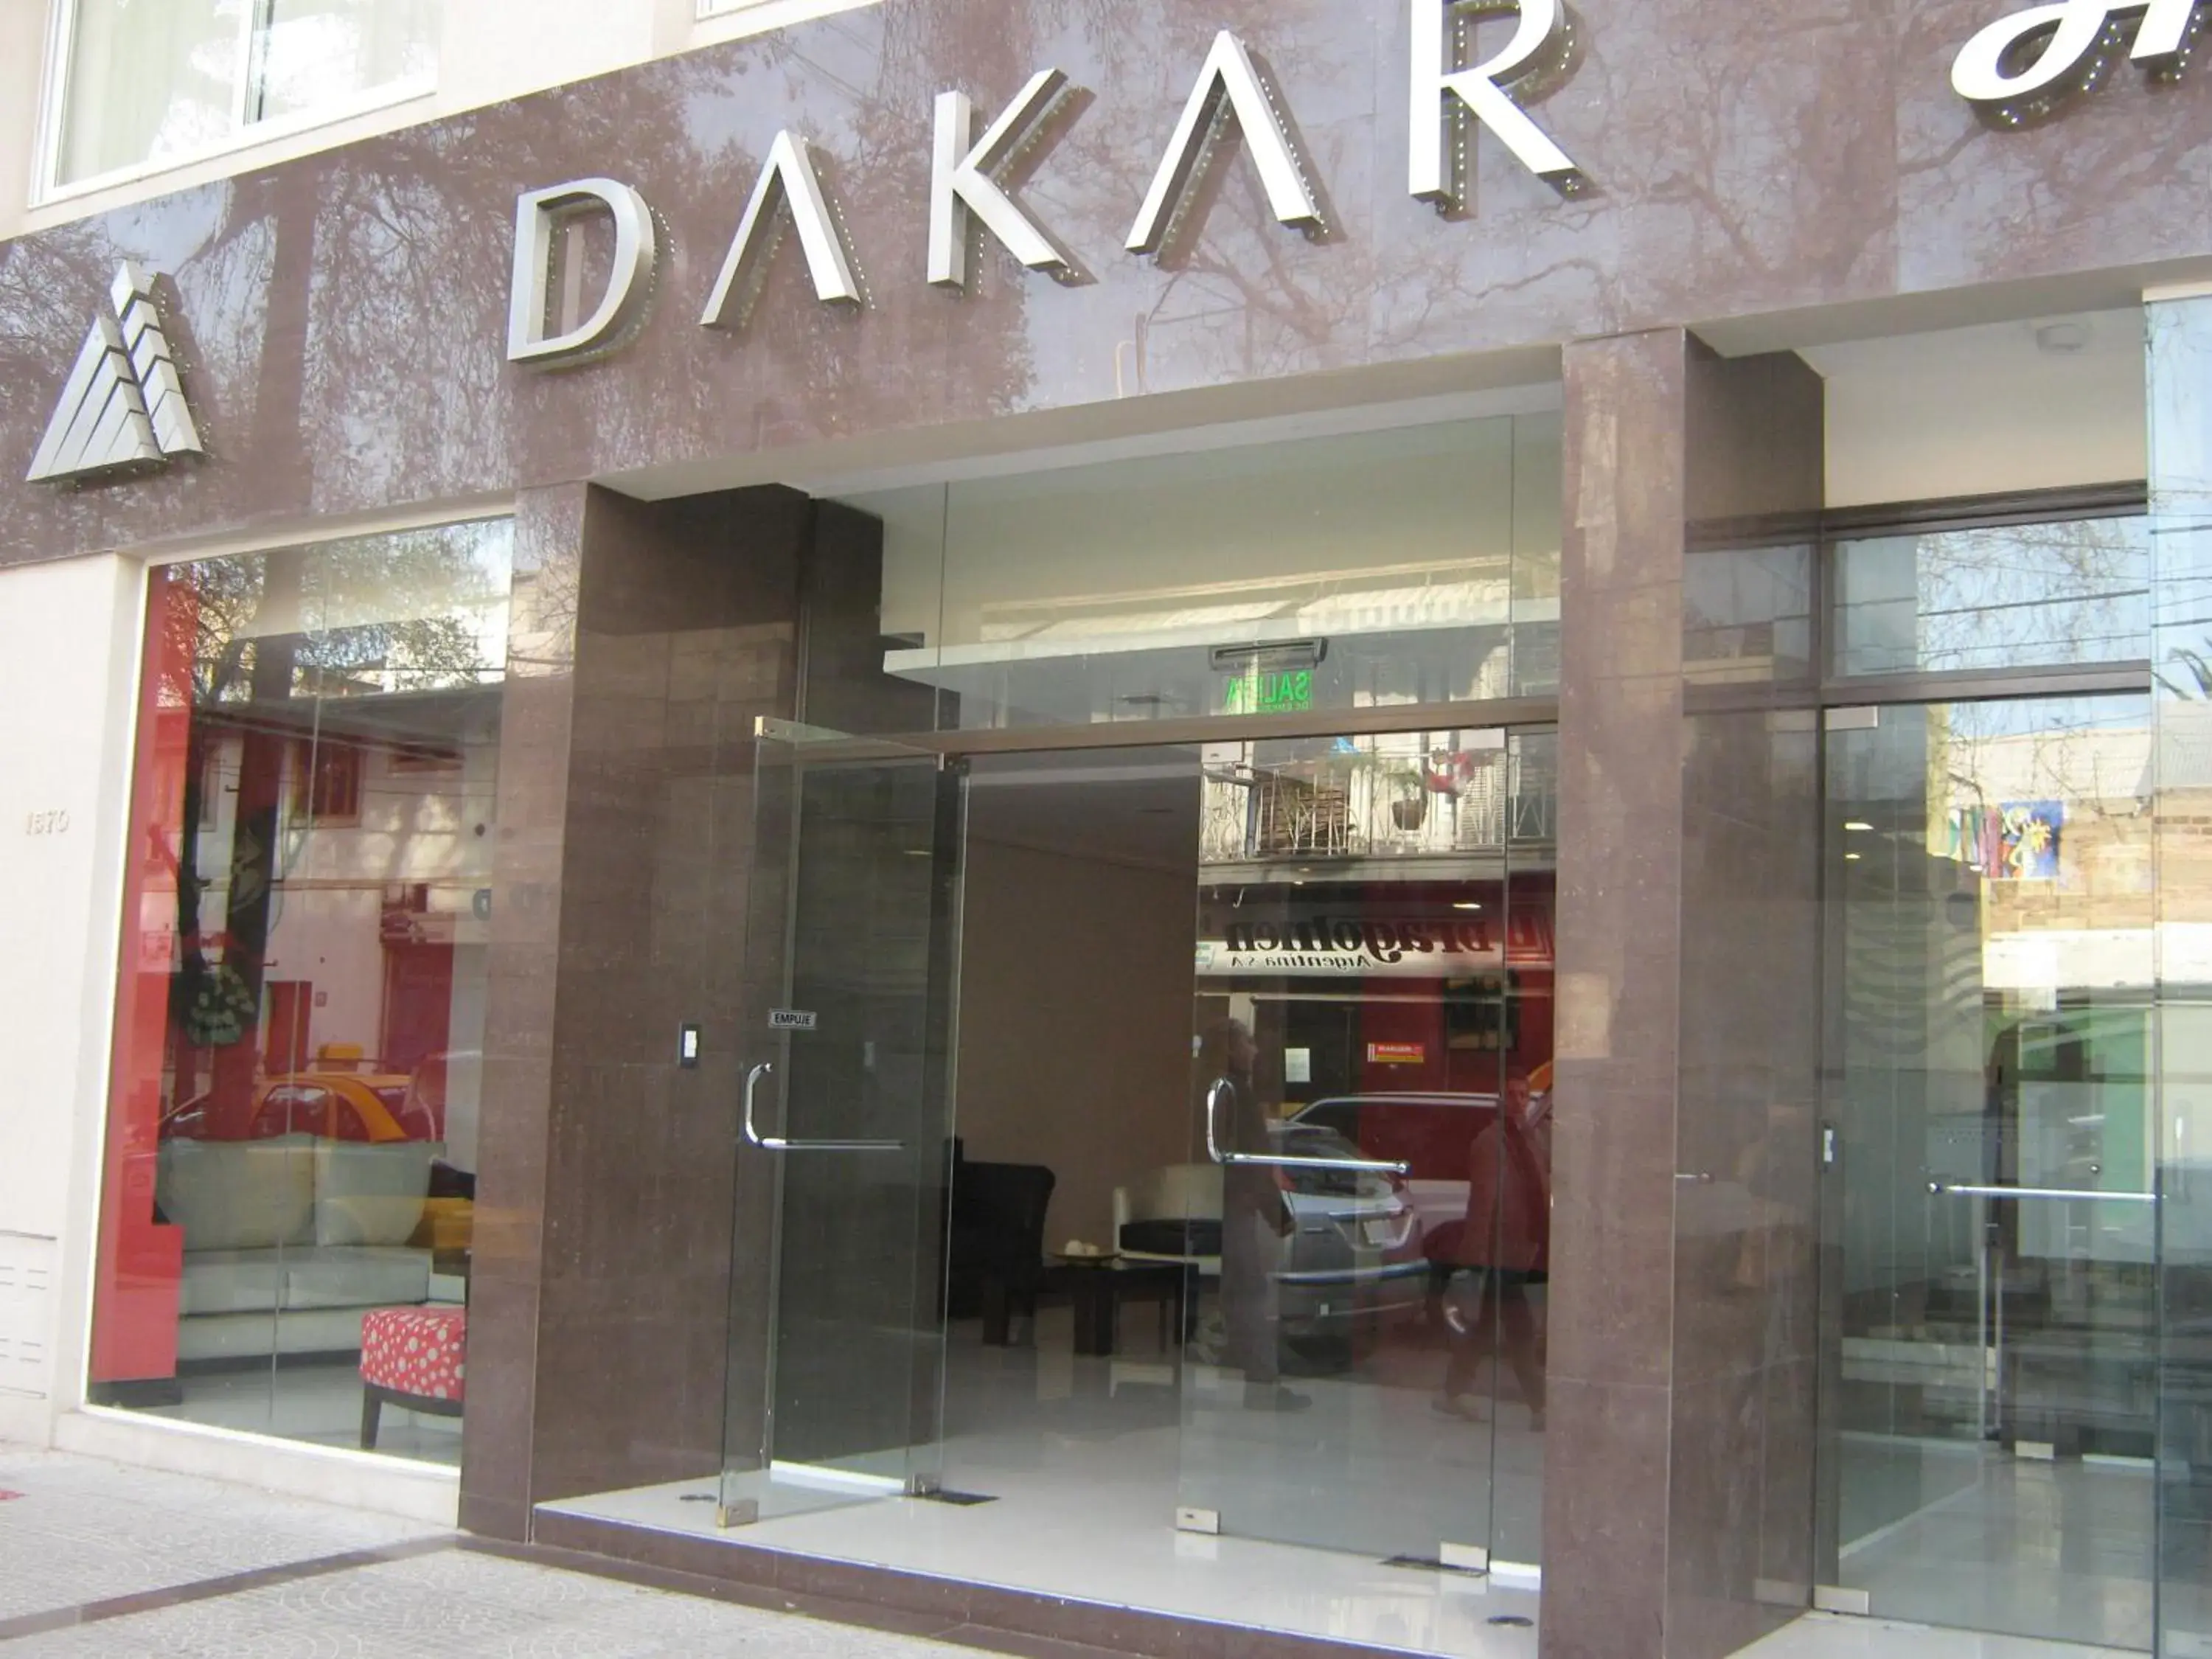 Facade/entrance in DAKAR HOTEL